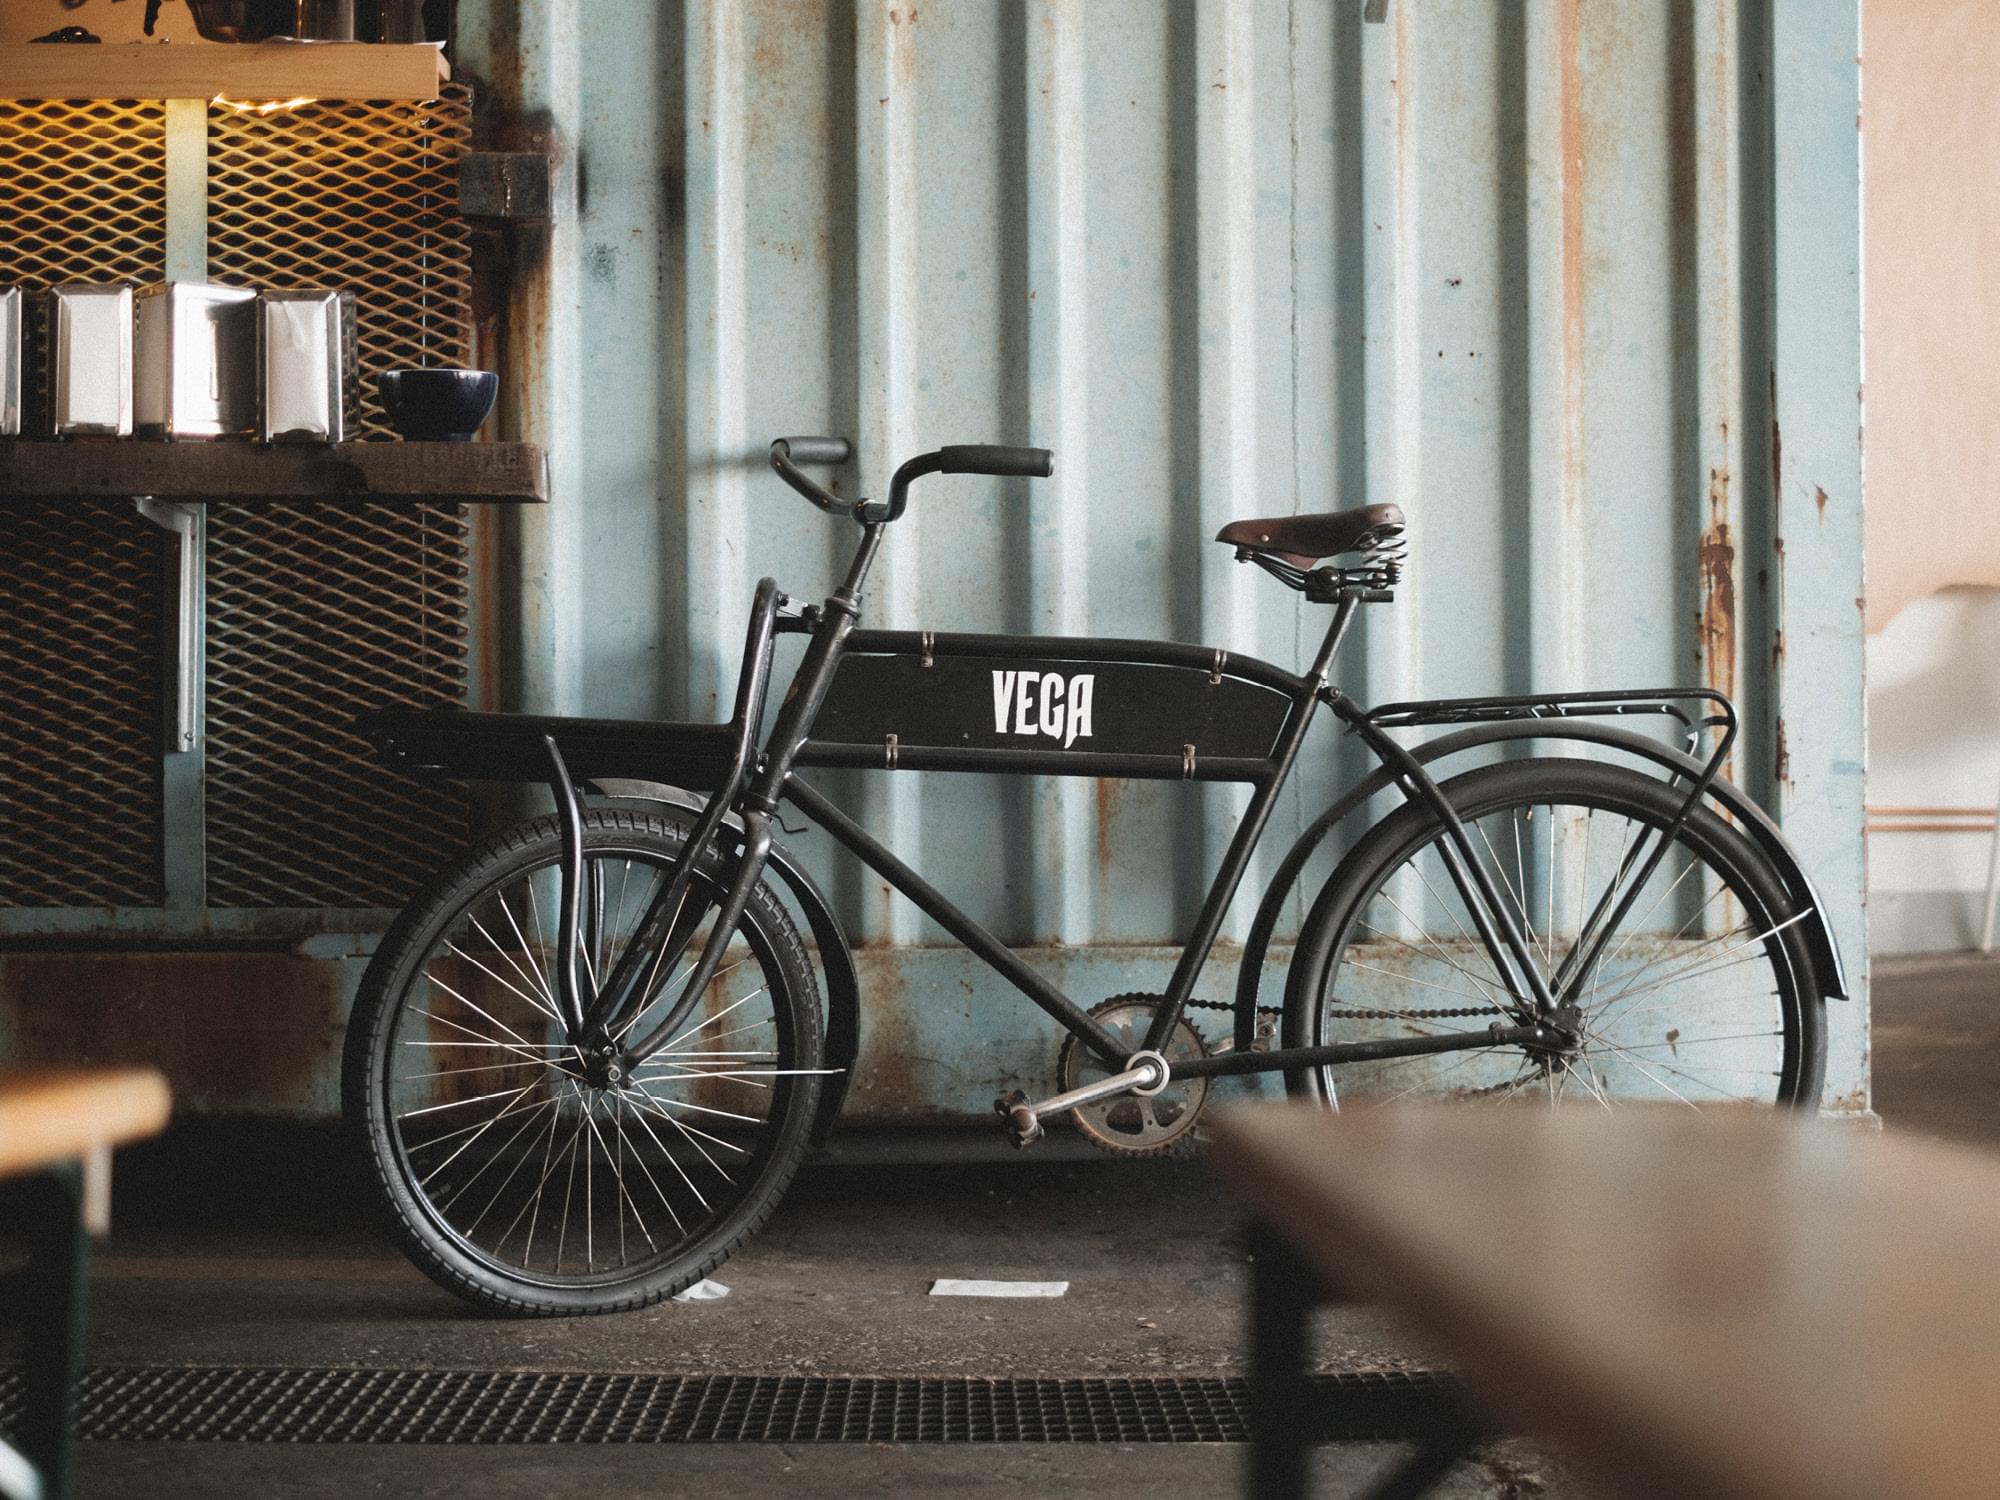 En svart cykel med texten Vega står mot en container.